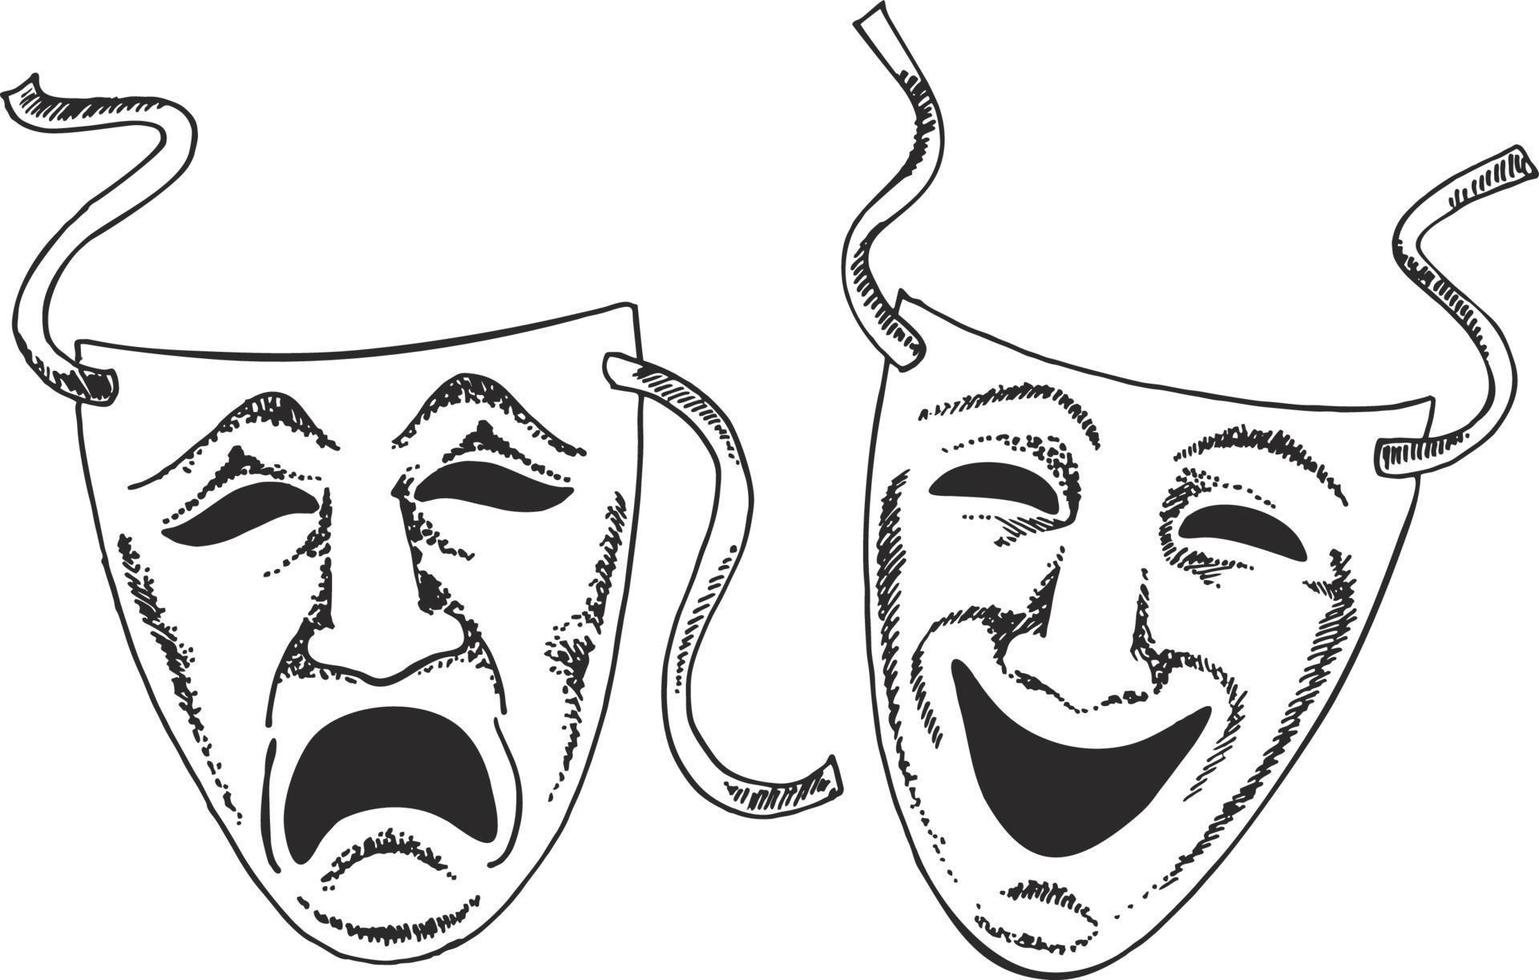 illustrazione di maschere teatrali o teatrali in stile schizzo in formato vettoriale adatto per il web, la stampa o l'uso pubblicitario